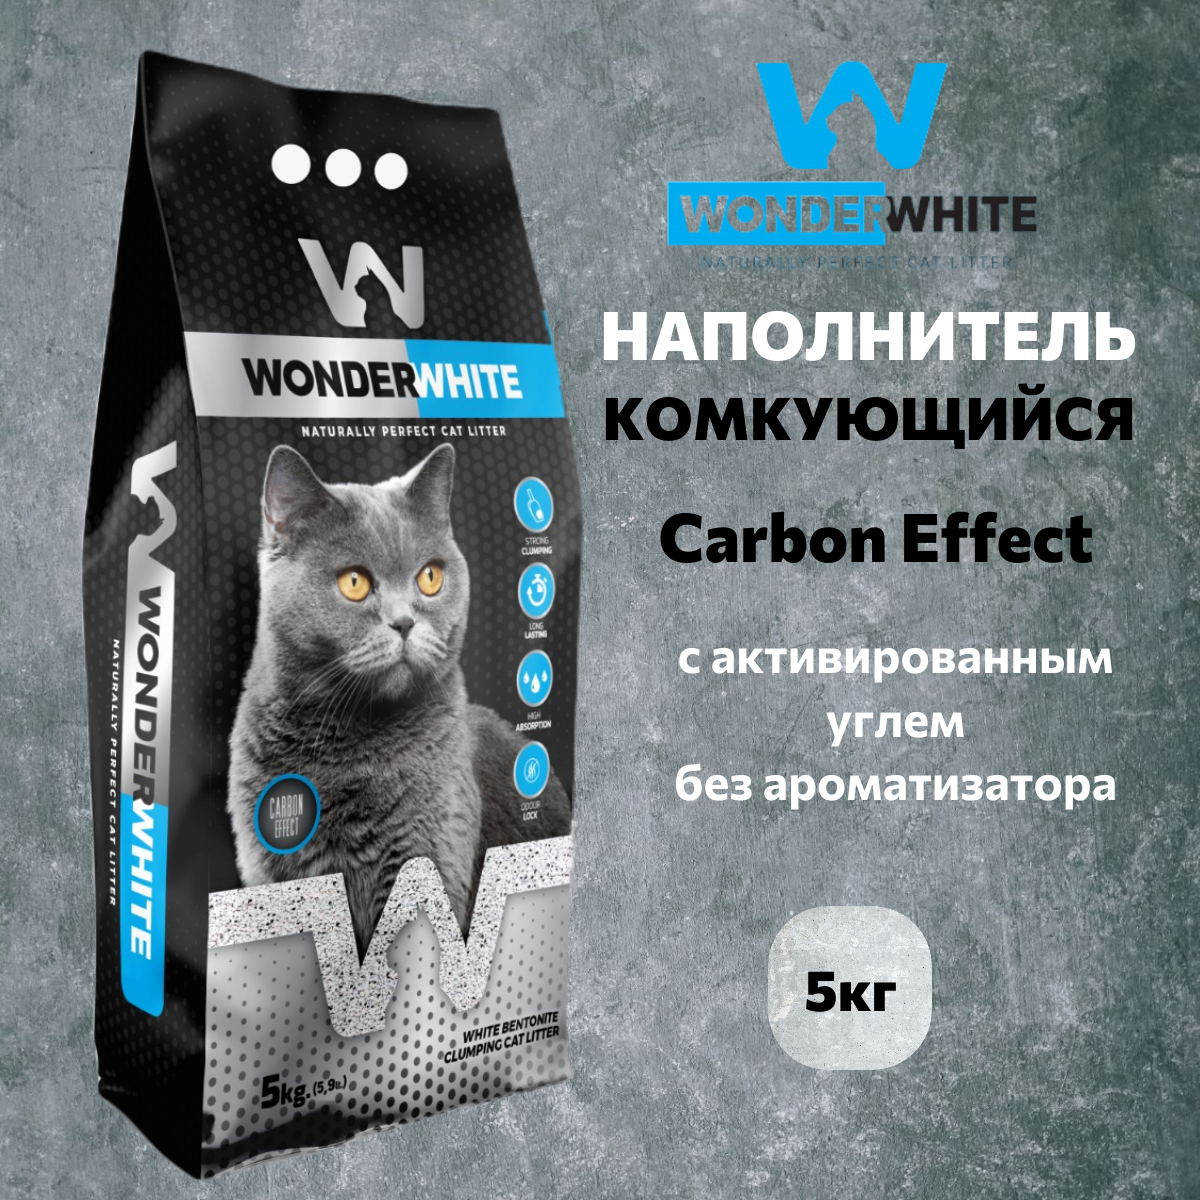 Наполнитель Wonder White Carbon Effect комкующийся c активированным углем без ароматизатора 5кг